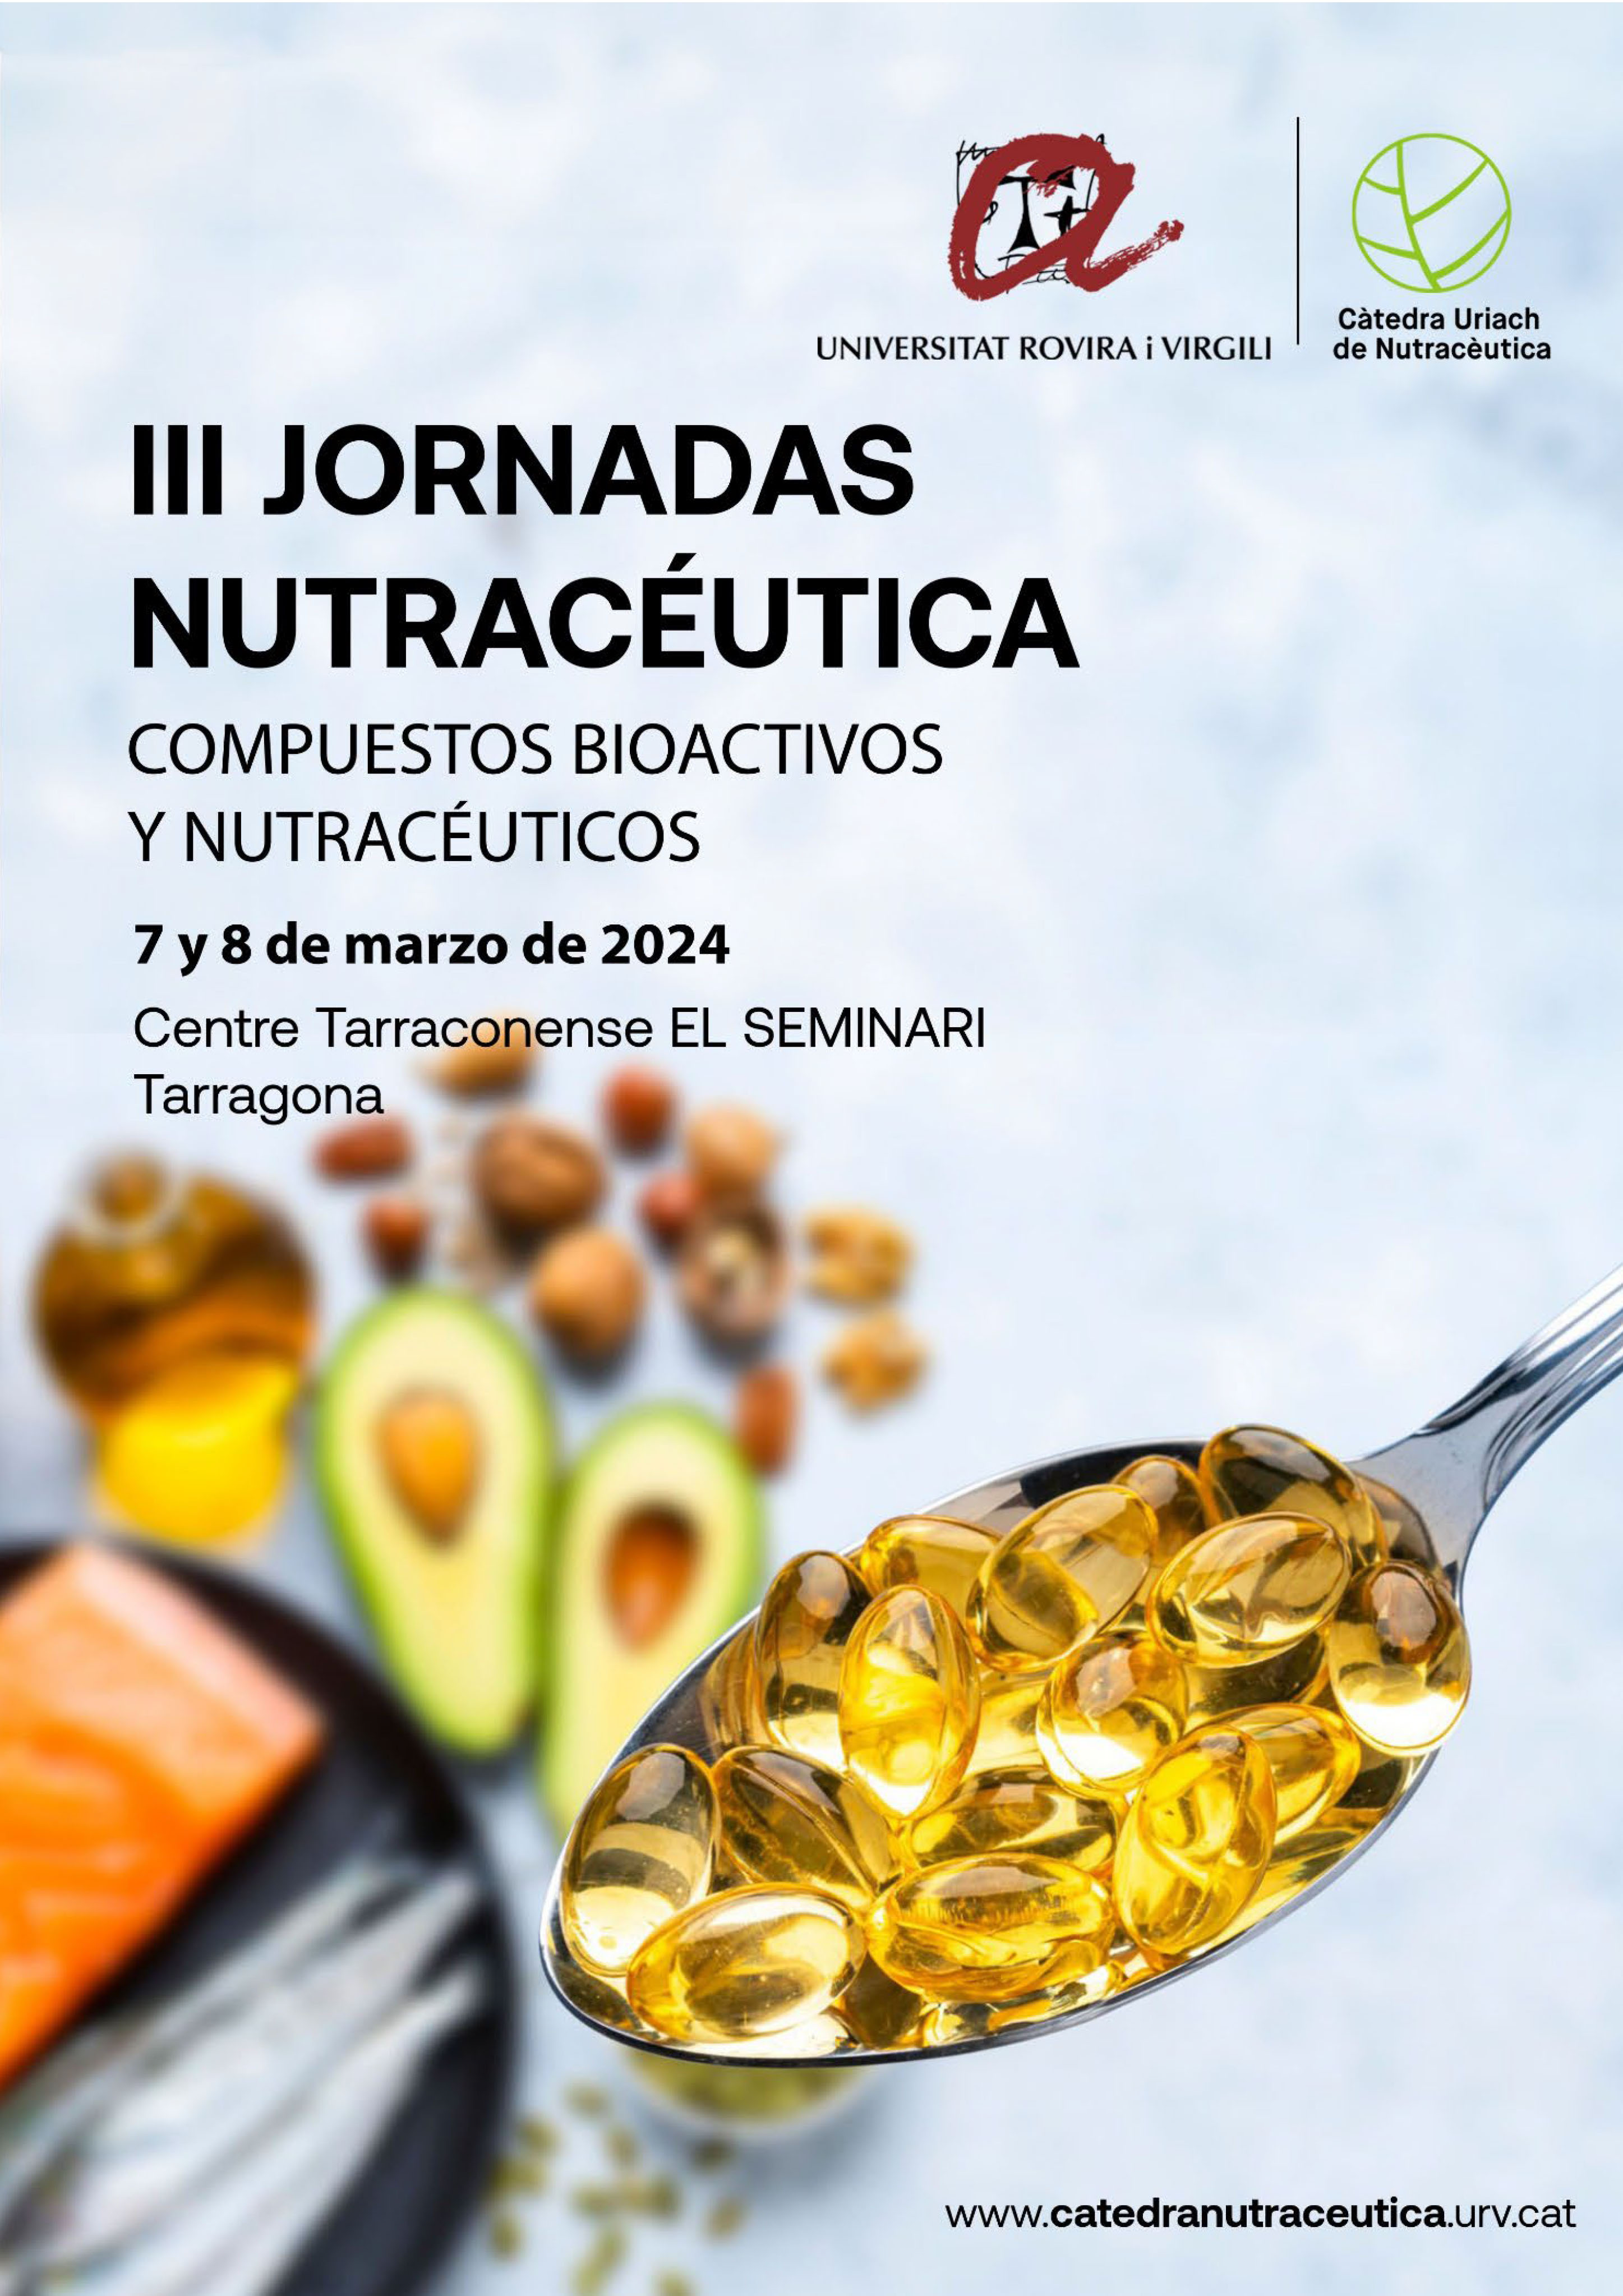 III Jornadas de Nutracéutica. Compuestos bioactivos y nutracéuticos